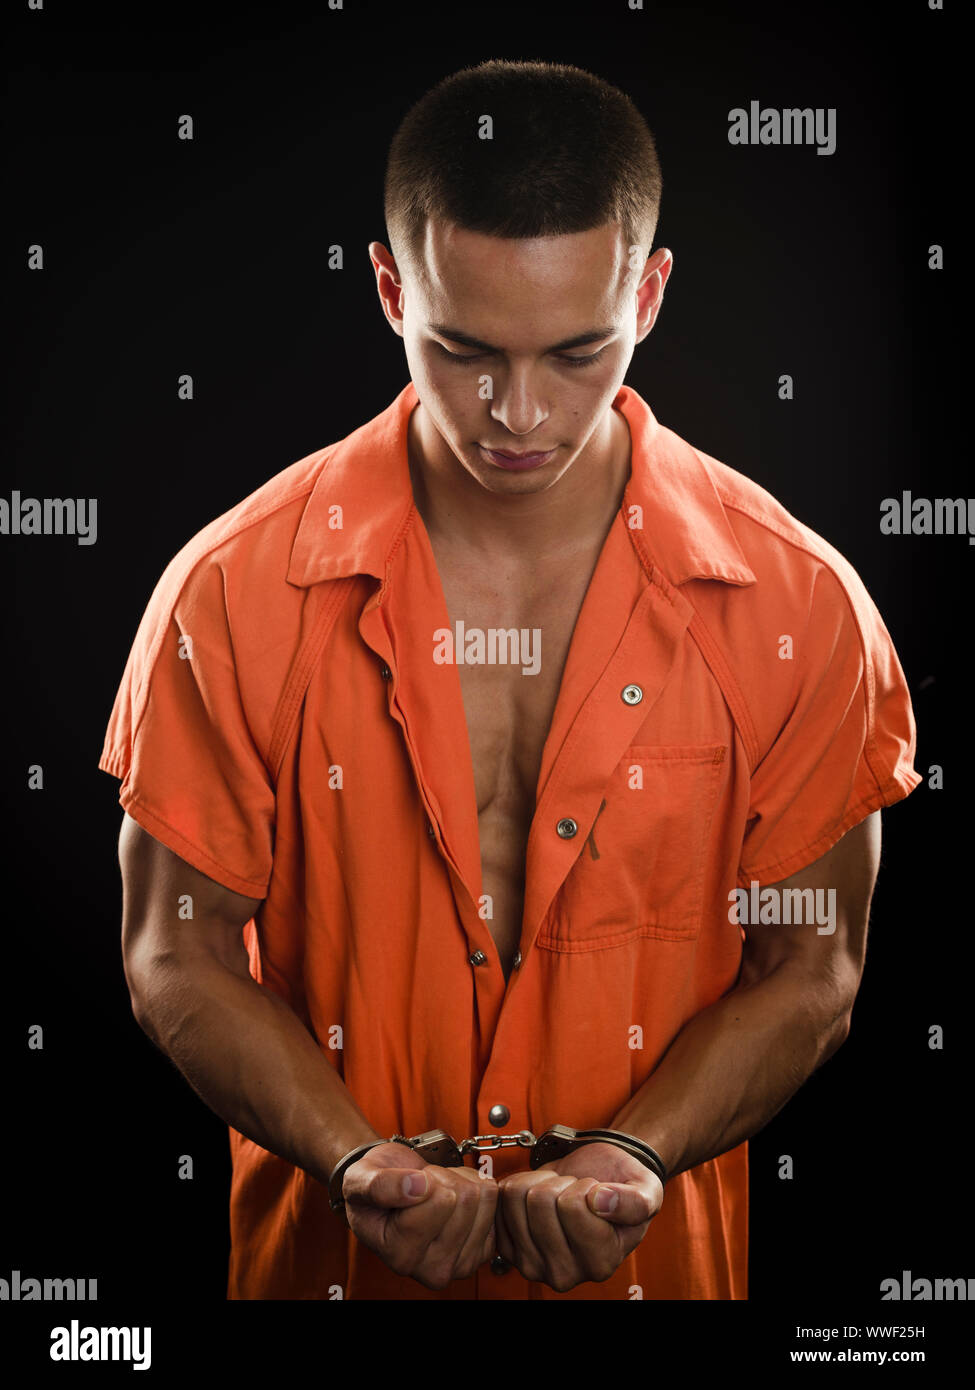 Orange prison uniform and handcuffs Stock Photo